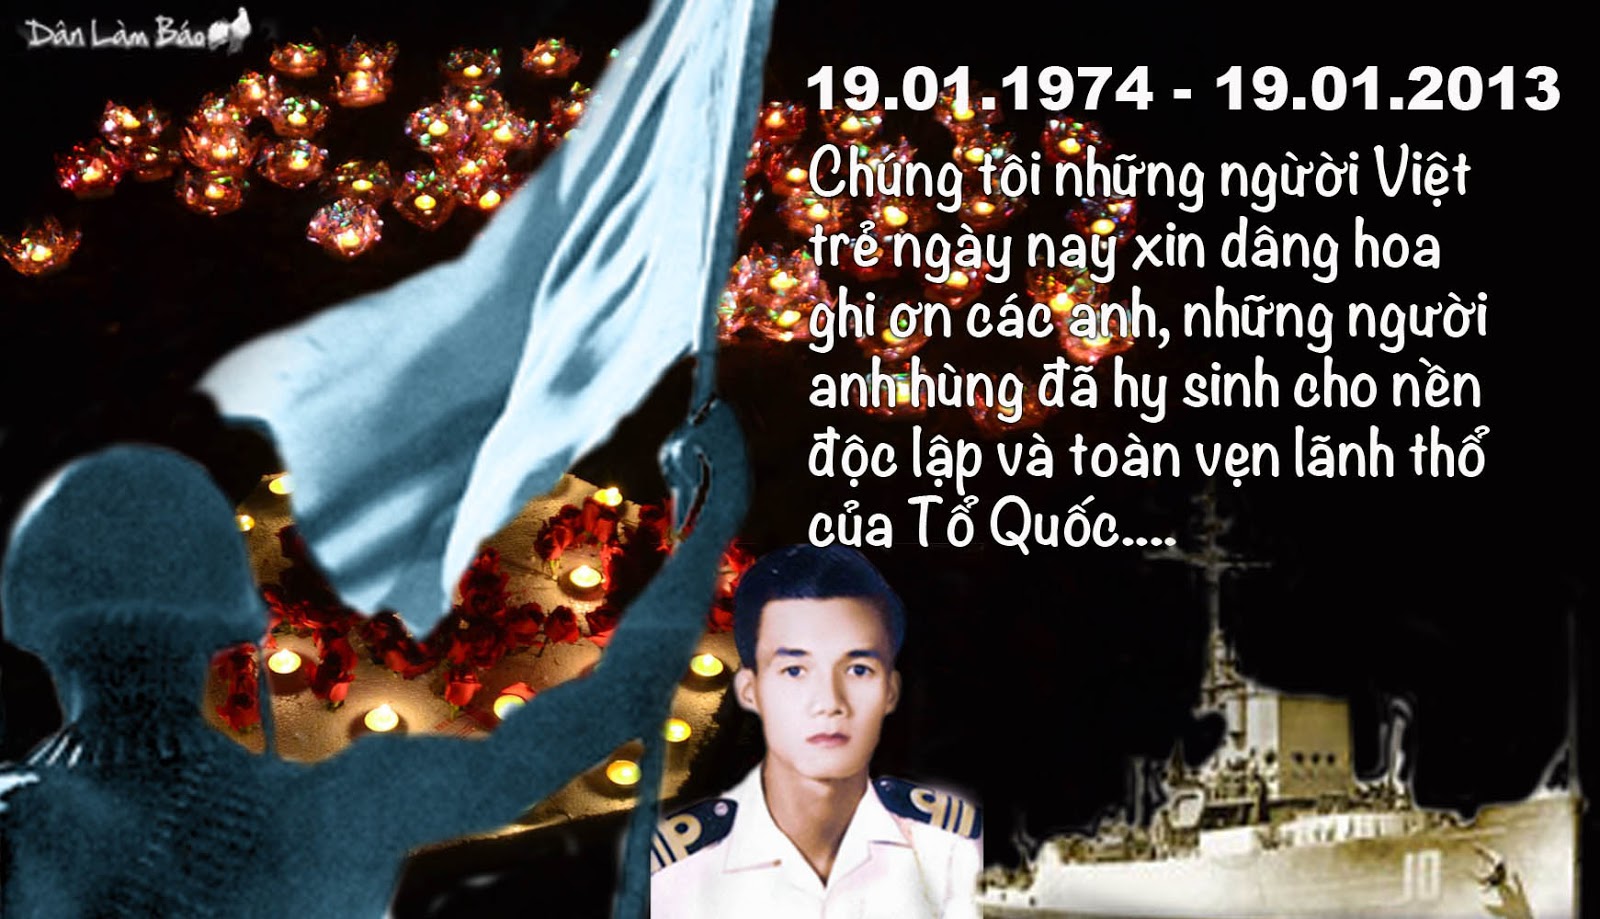 quốc - Tài liệu quân dân VNCH cương quyết chống TC xâm lược Hoàng Sa năm 1974 Tuongniem-19-1-2013-00-danlambao